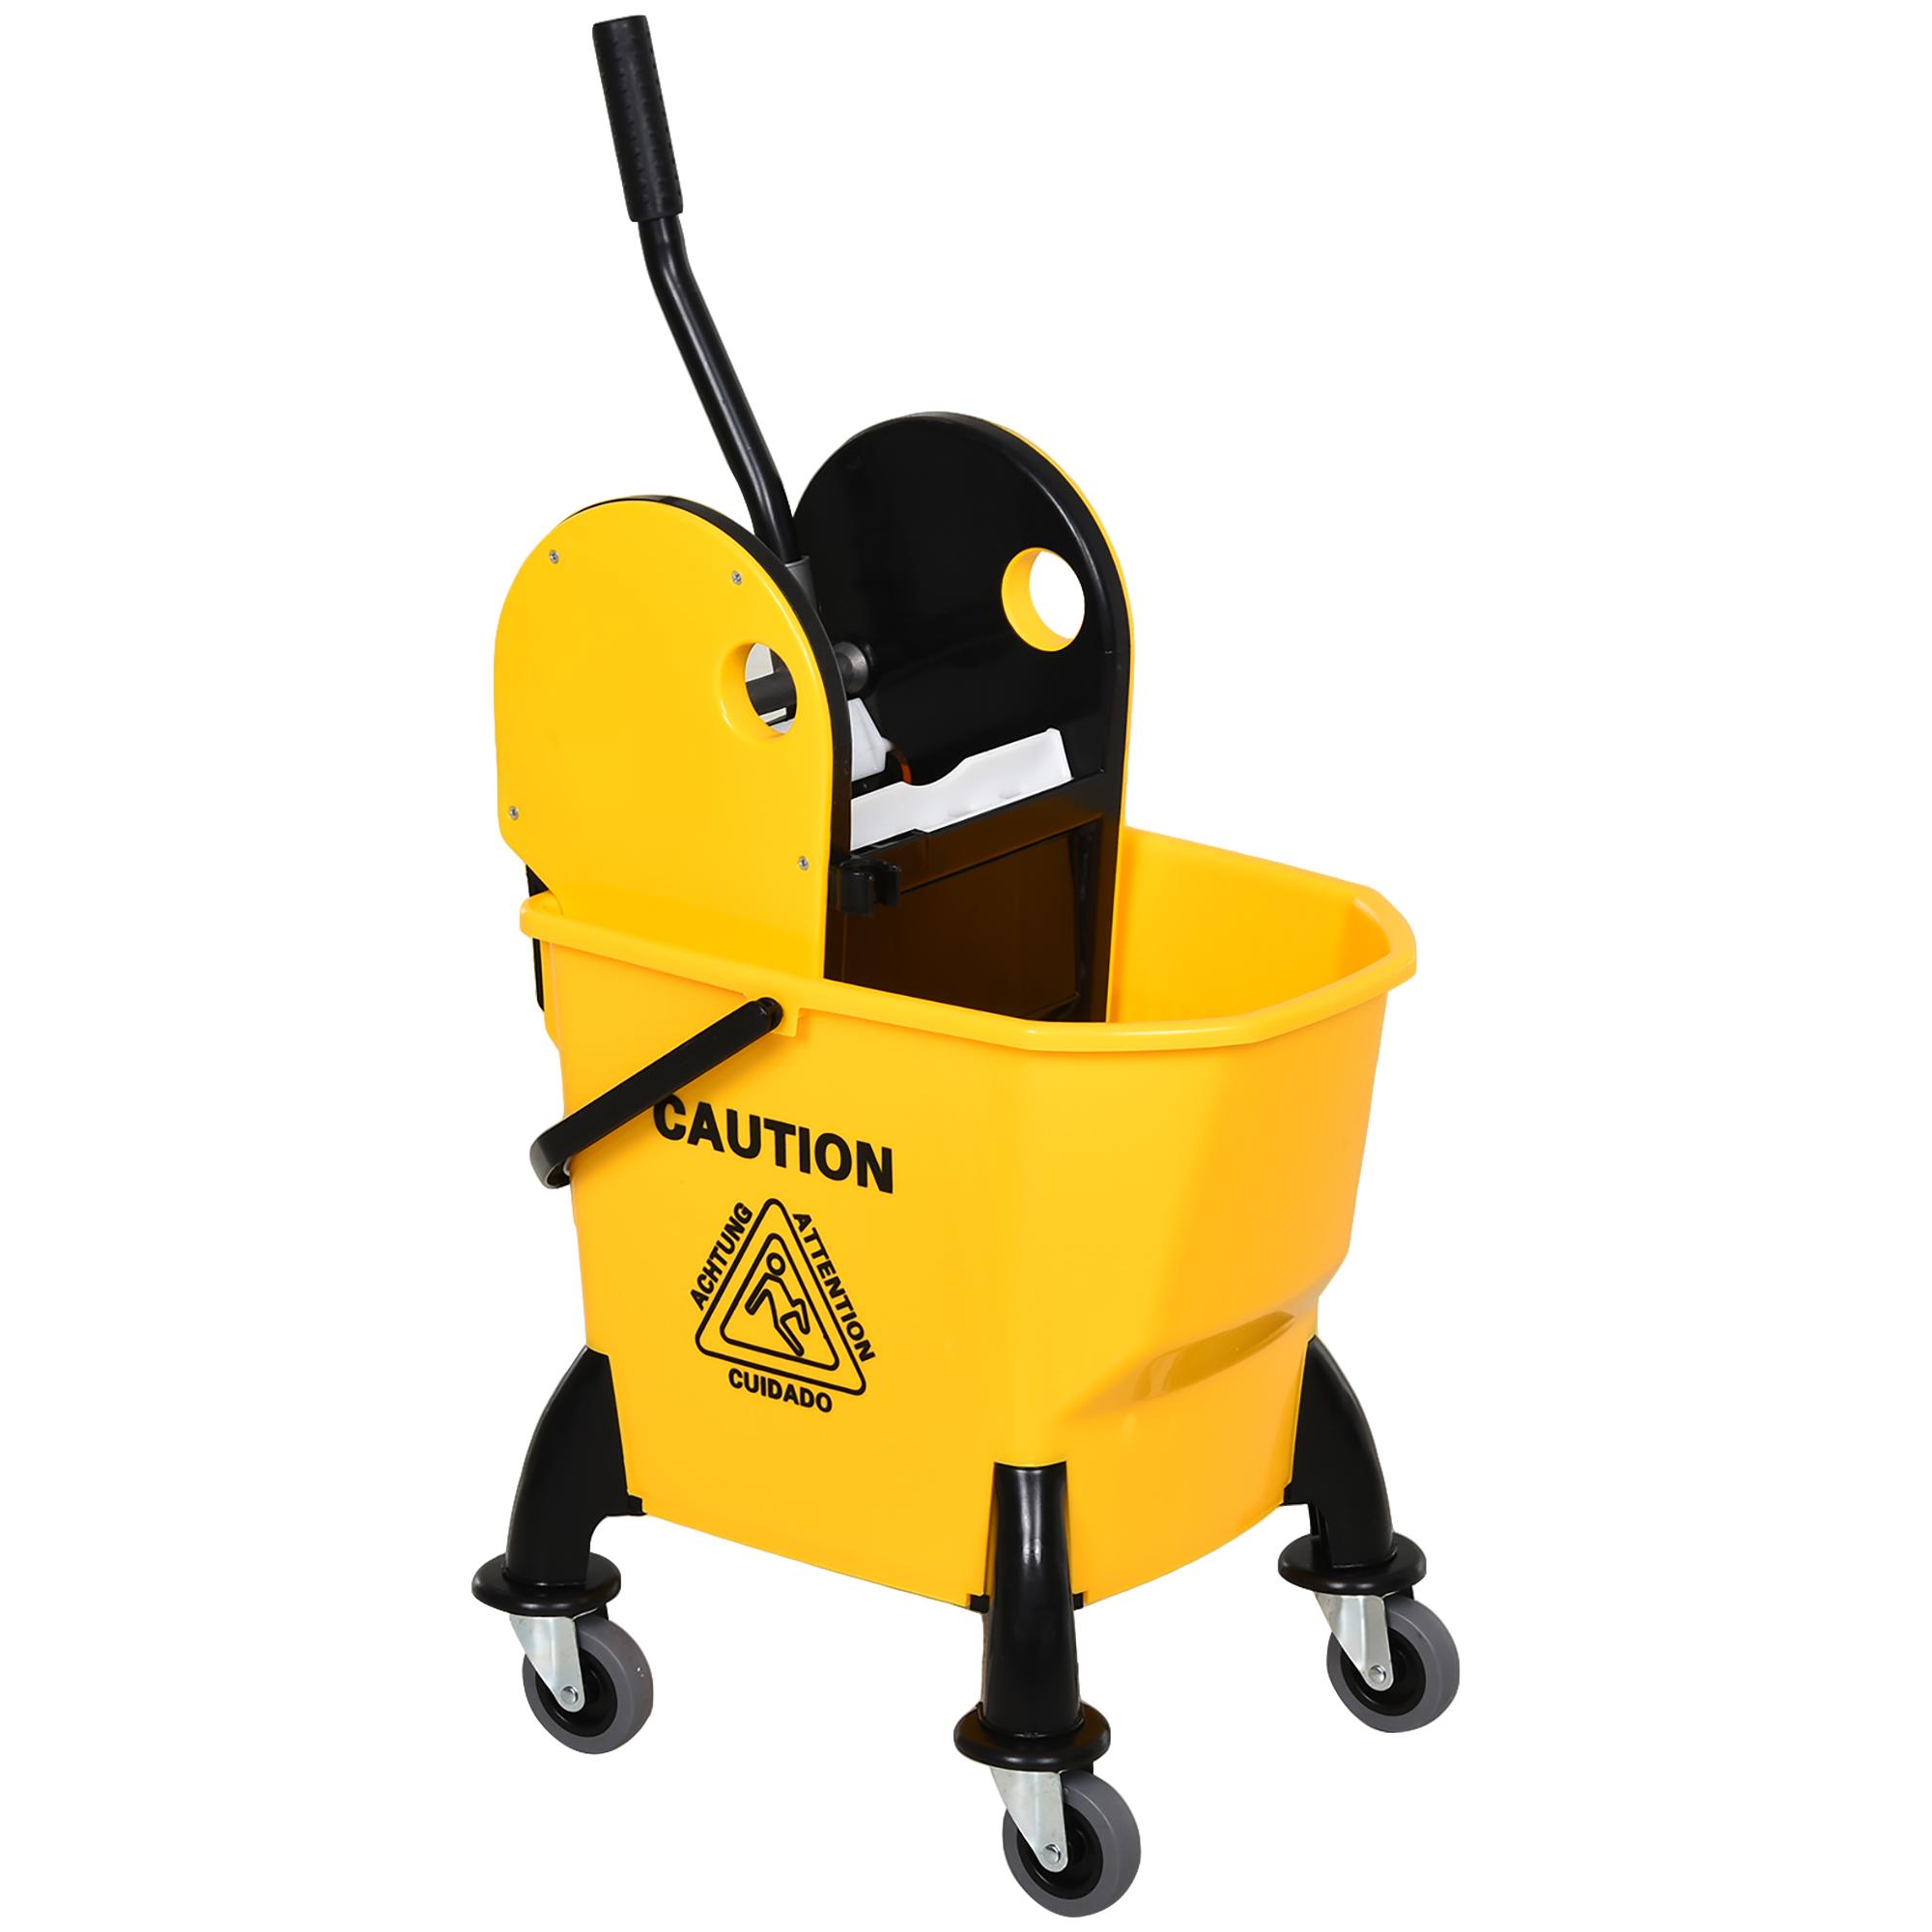 HOMCOM Chariot de nettoyage lavage seau de ménage 26L avec essoreur - 4  roulettes, poignées - métal PP jaune noir pas cher 